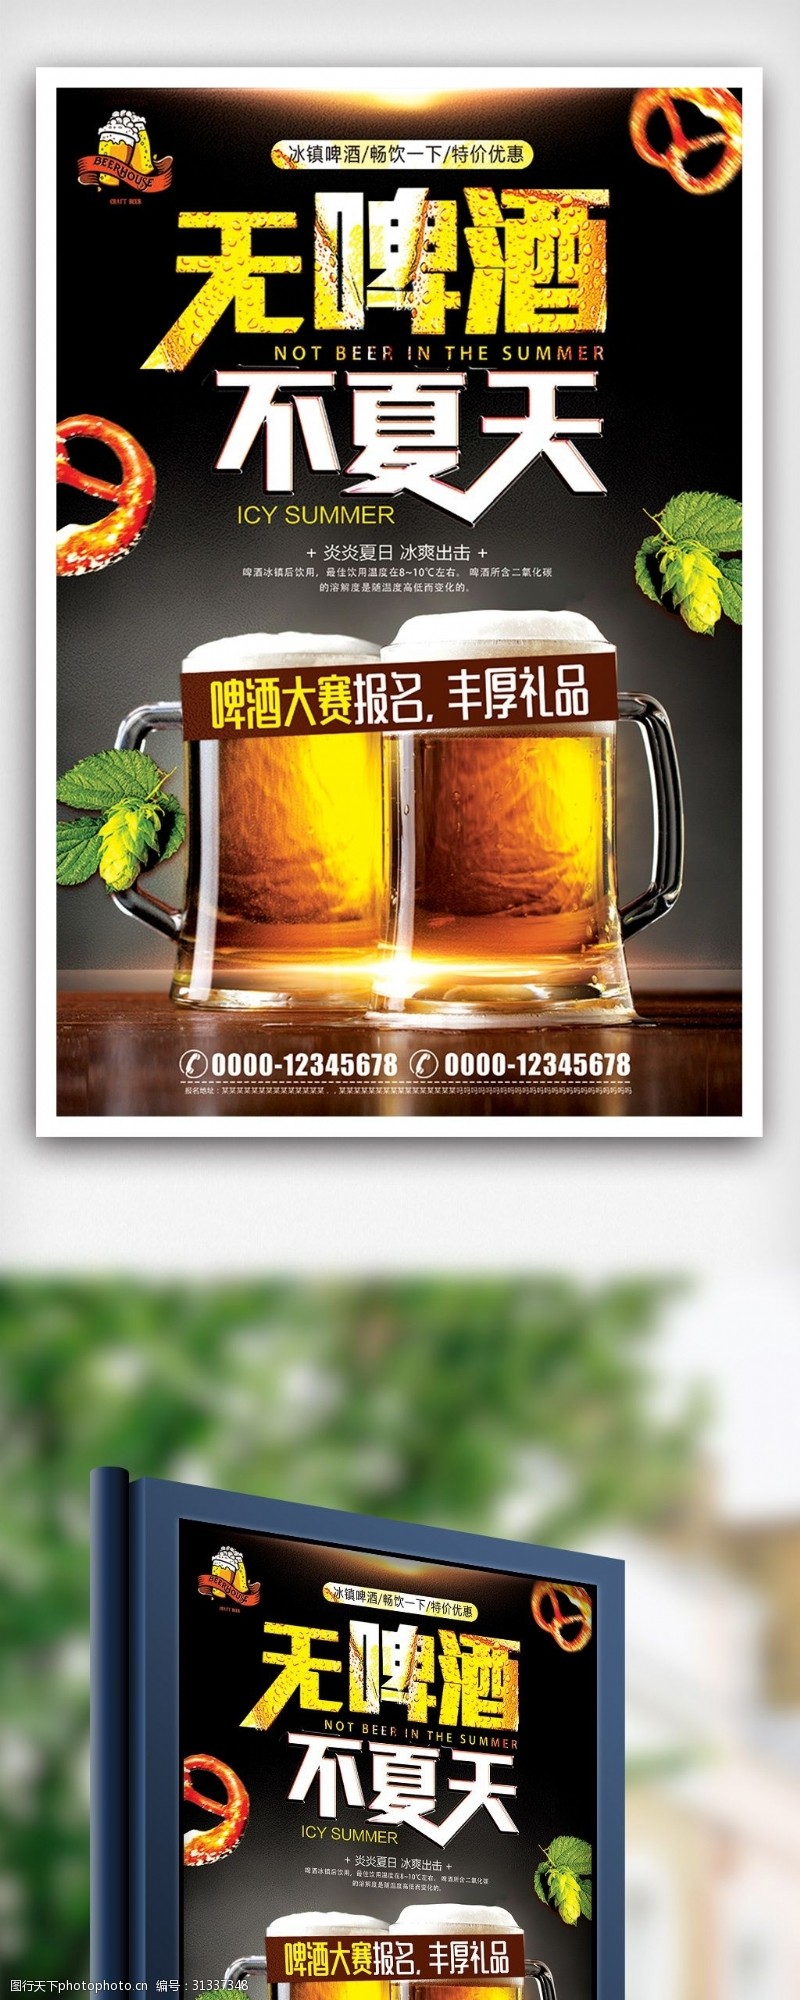 啤酒免费下载2018喝啤酒大赛冰爽啤酒比赛海报